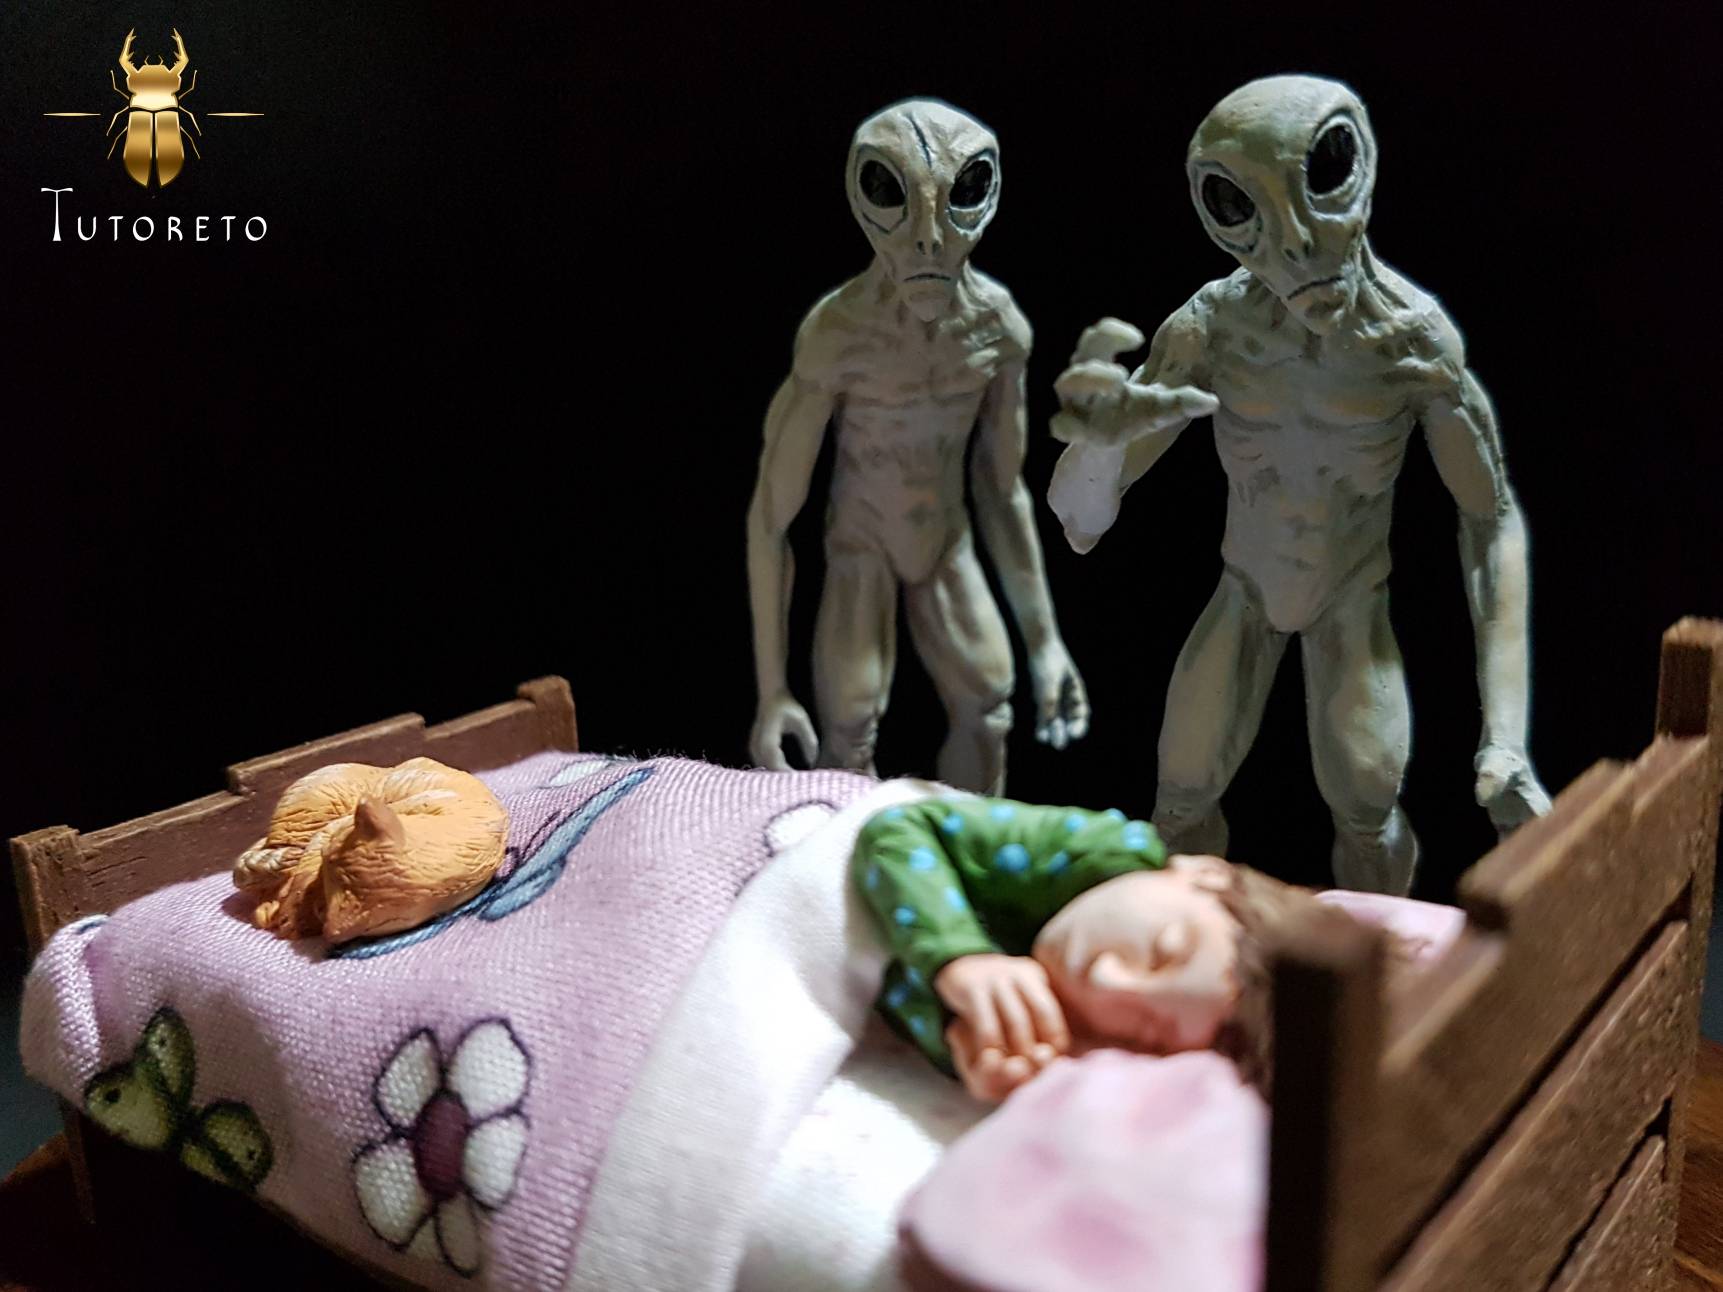 alien abduction scene